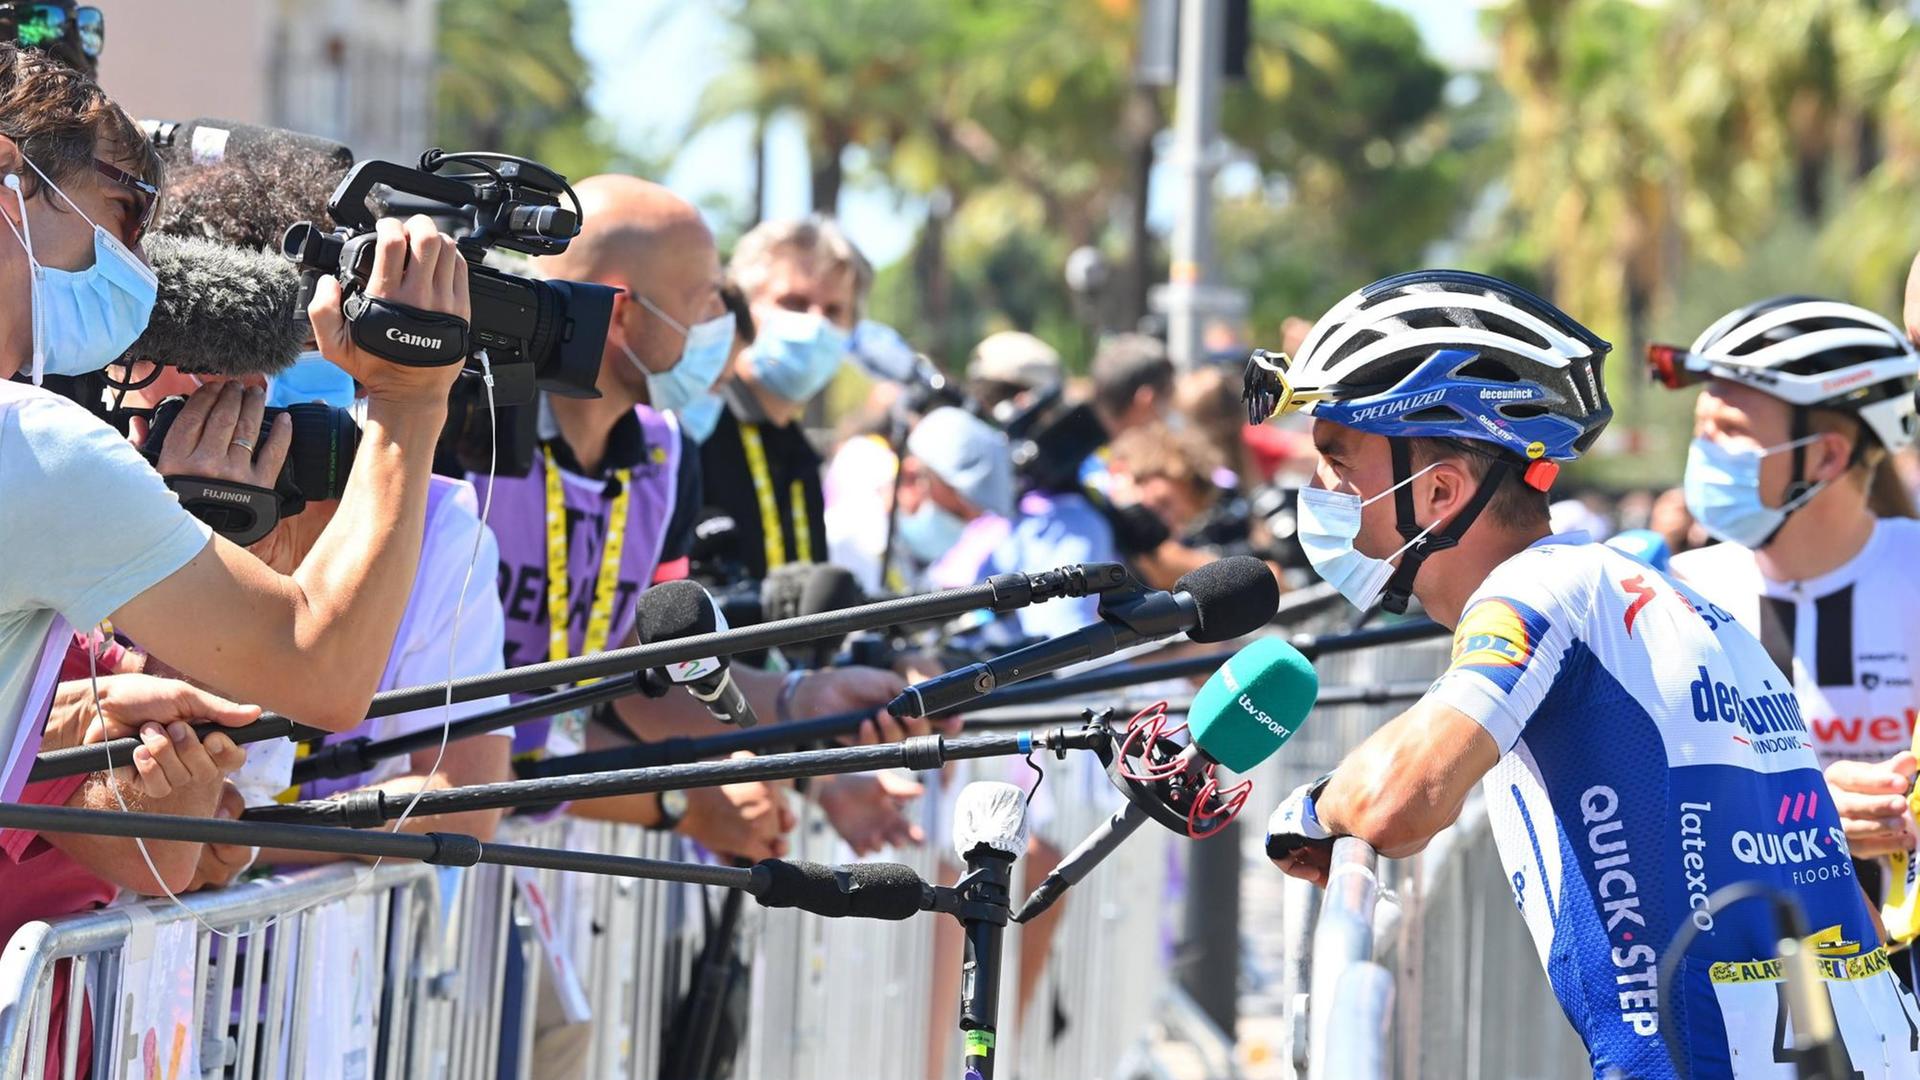 Julian Alaphilippe, französischer Radprofi vom Team DECEUNINCK-QUICK-STEP, bei der 2. Etappe der Tour de France 2020 am 30. August 2020 in Nizza vor den Kameras und Mikrofonen.